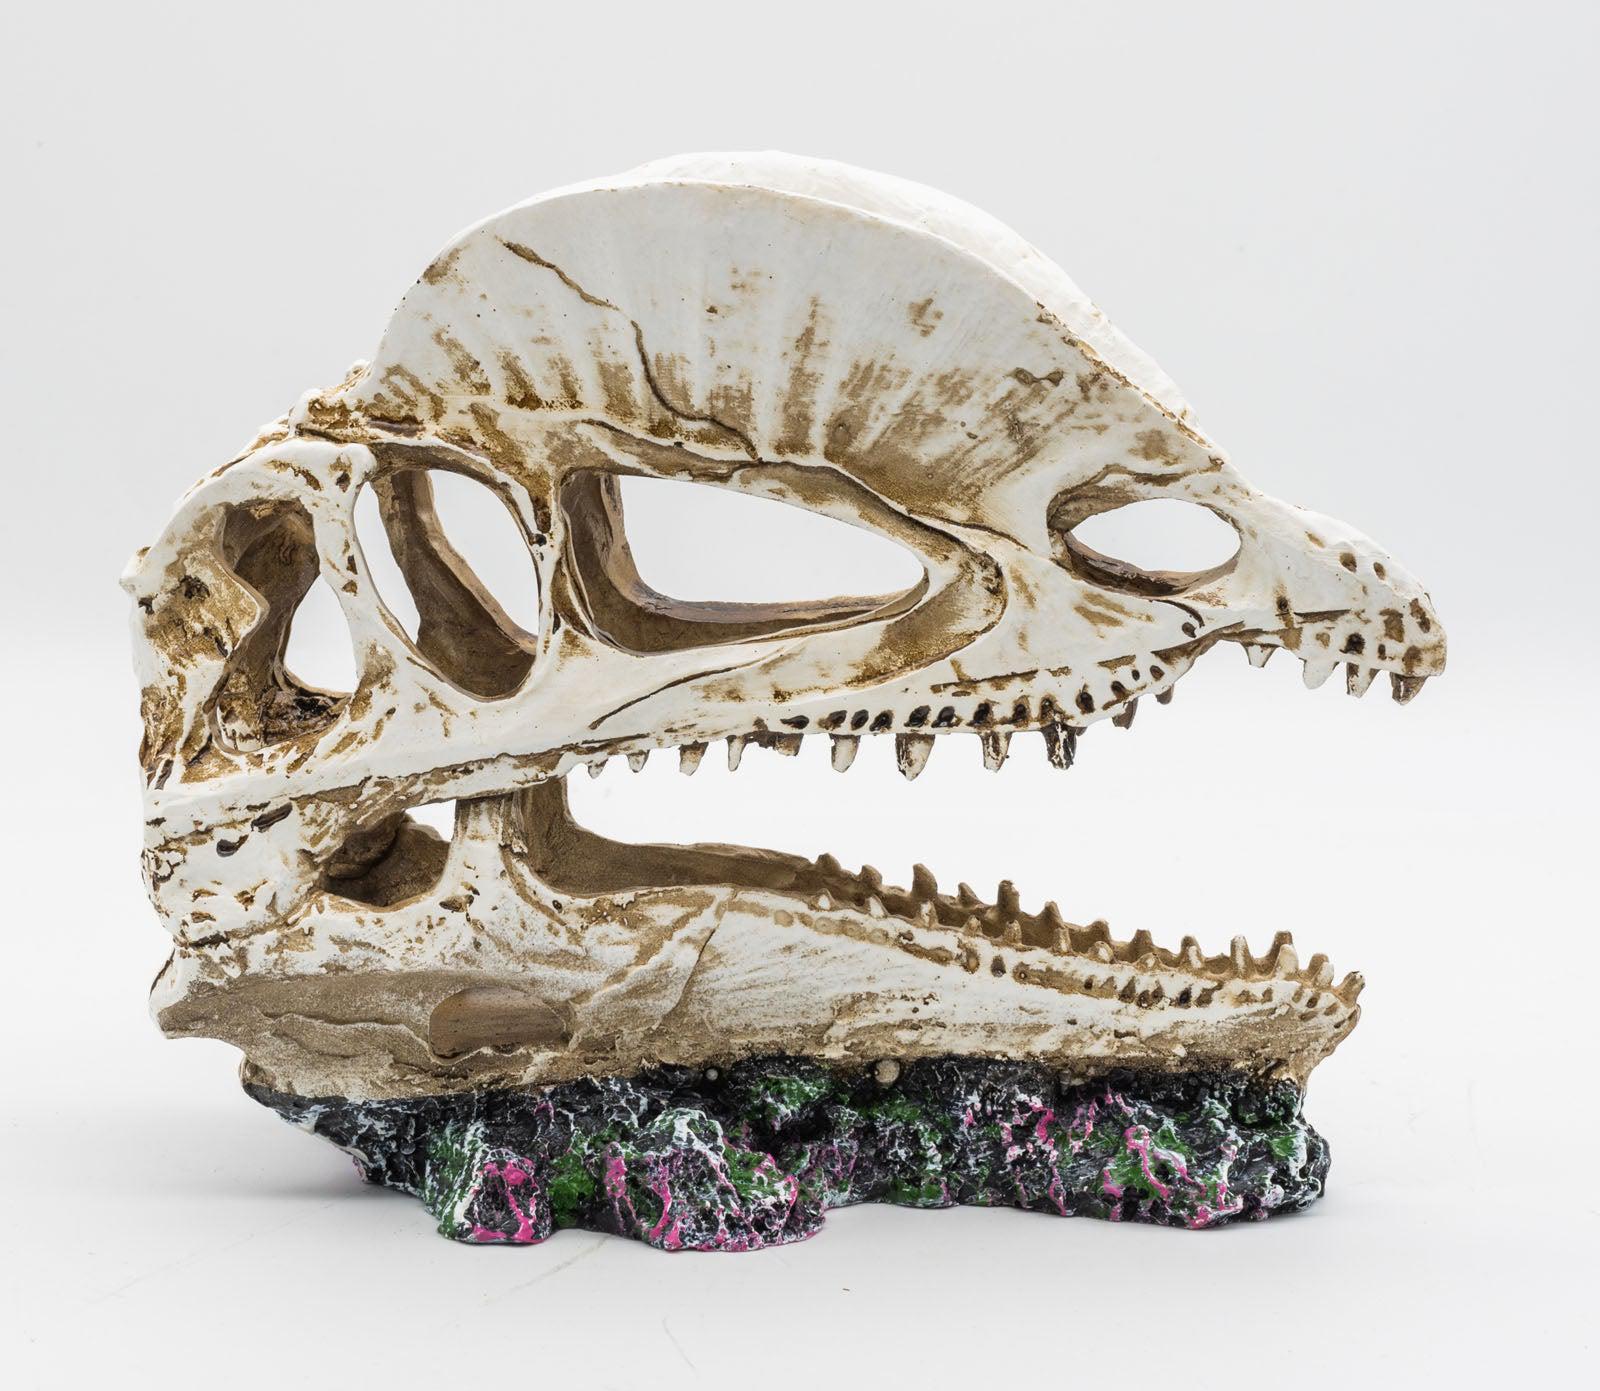 ProRep Resin Dilophosaurus Skull, 19cm